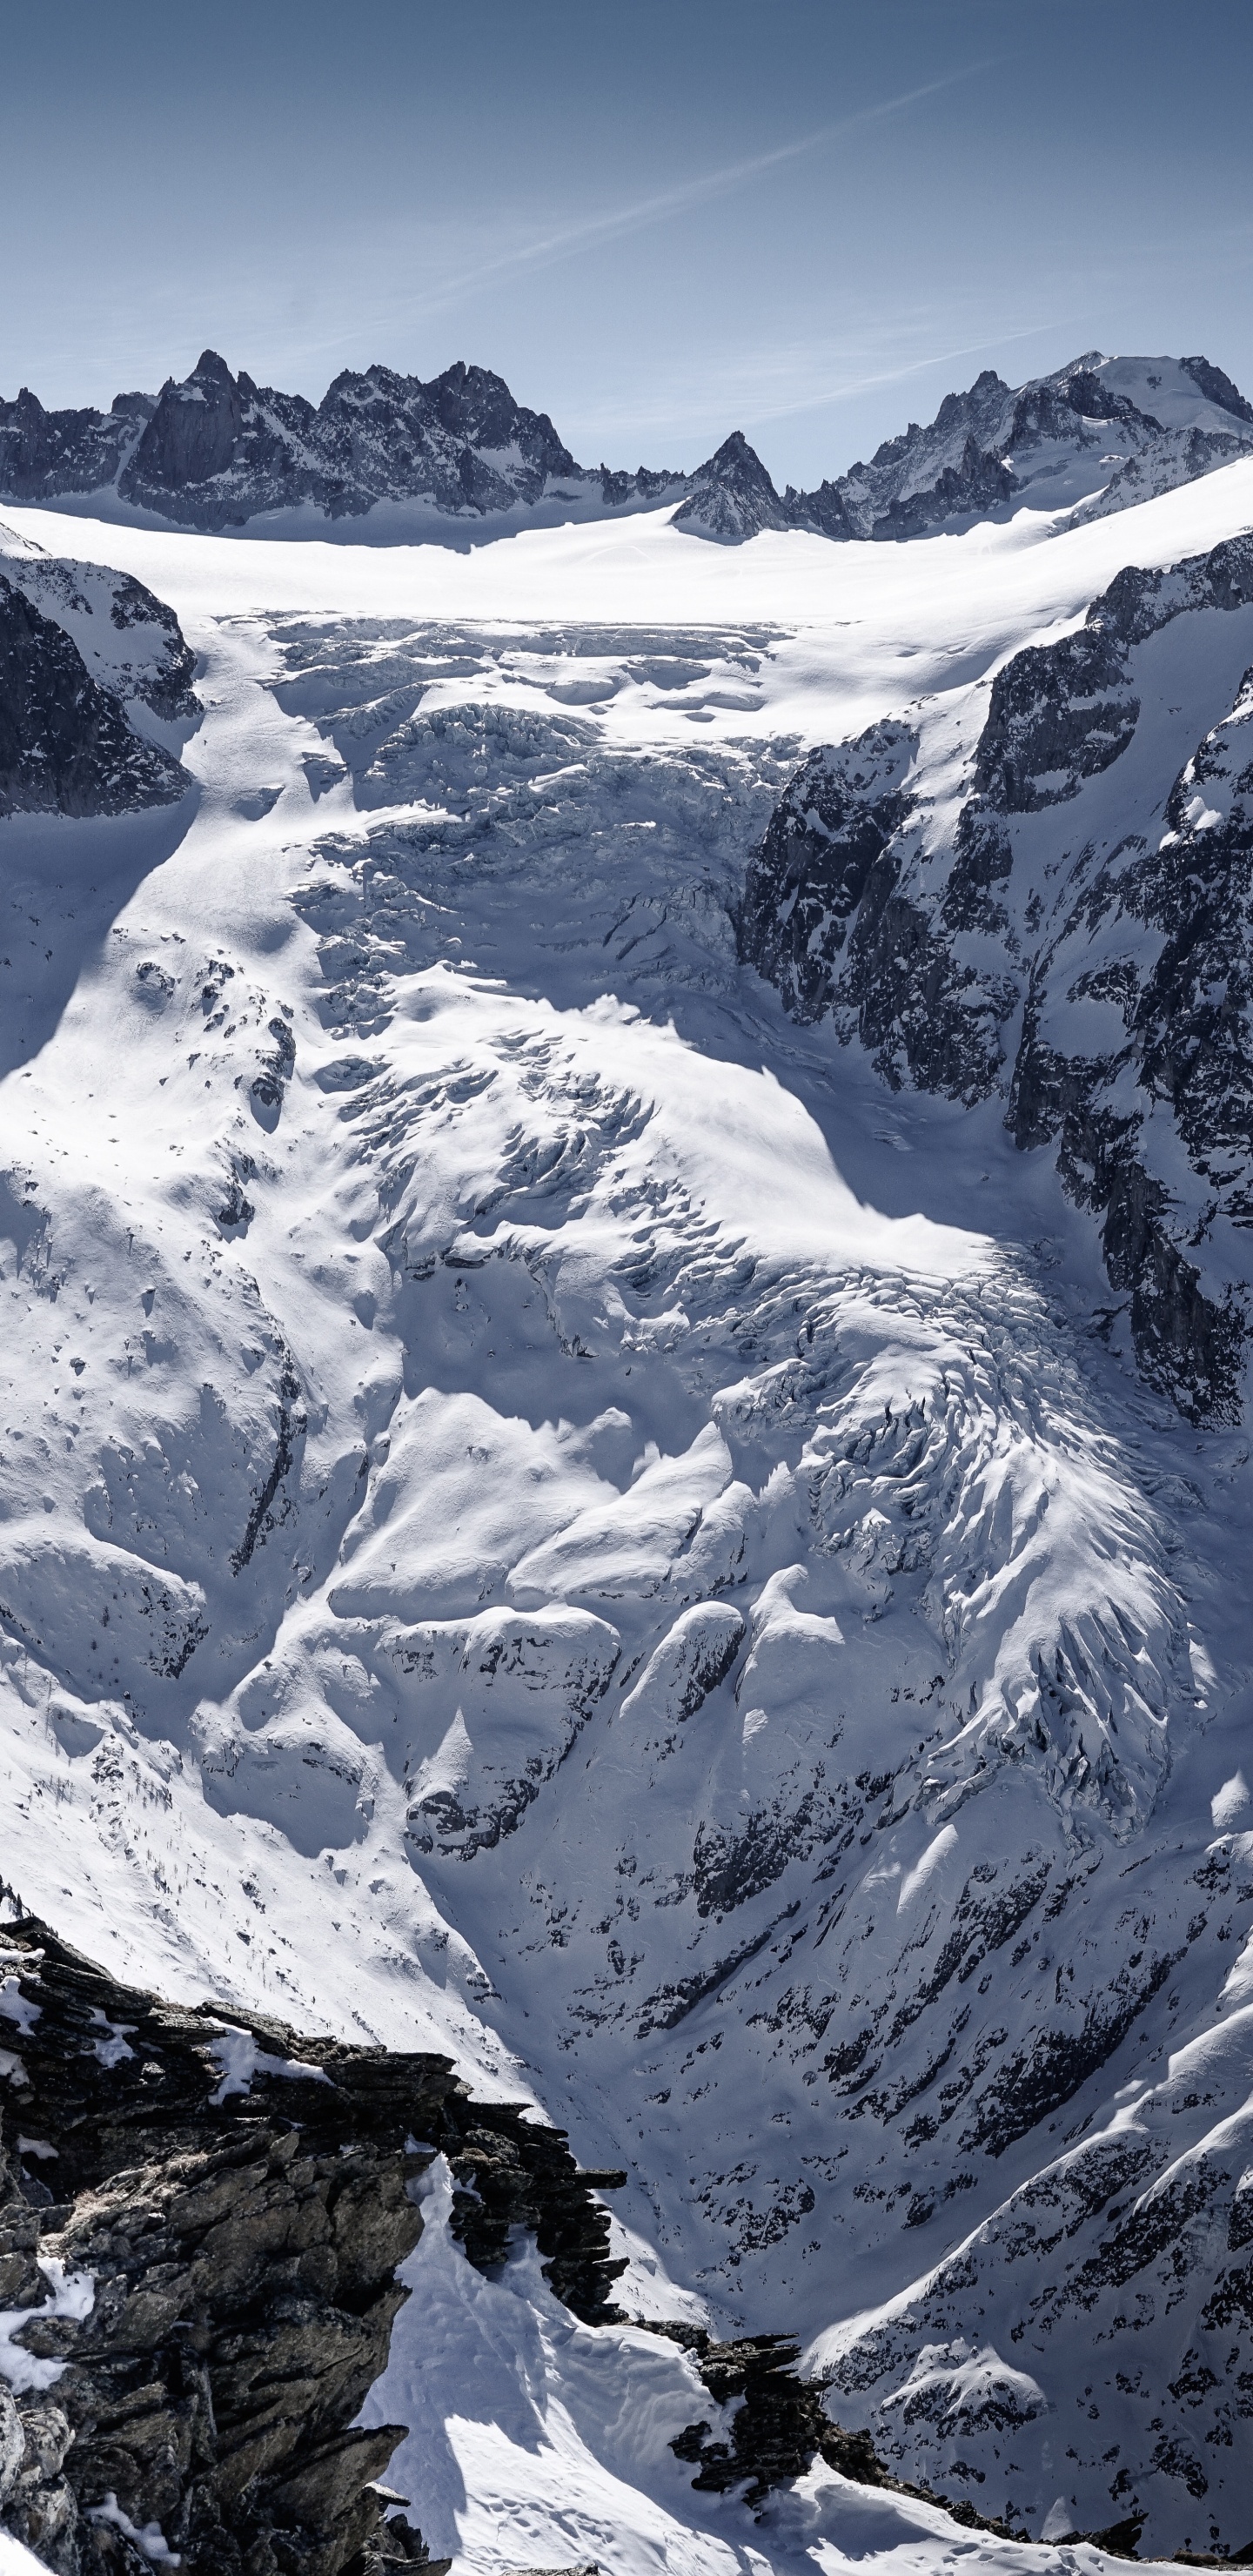 Las Formaciones Montañosas, Montaña, Glaciar de Terreno, Macizo, Alpes. Wallpaper in 1440x2960 Resolution